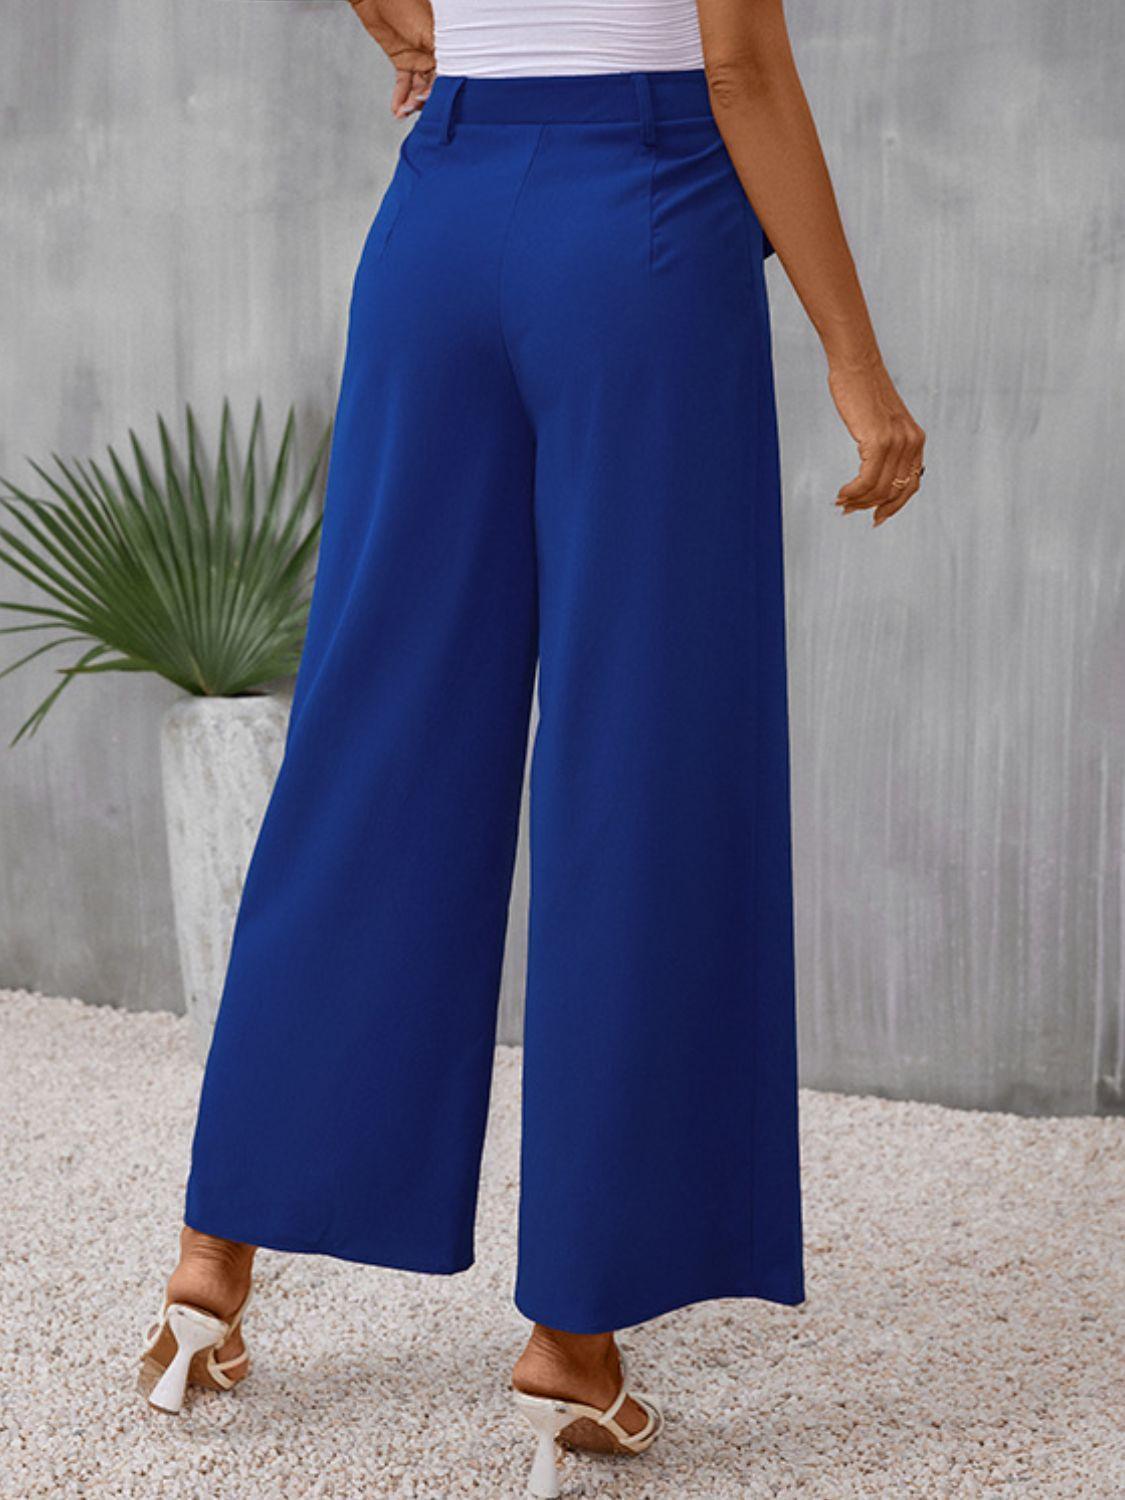 Casual Elegance Flap Pockets Blue Wide Leg Pants - MXSTUDIO.COM